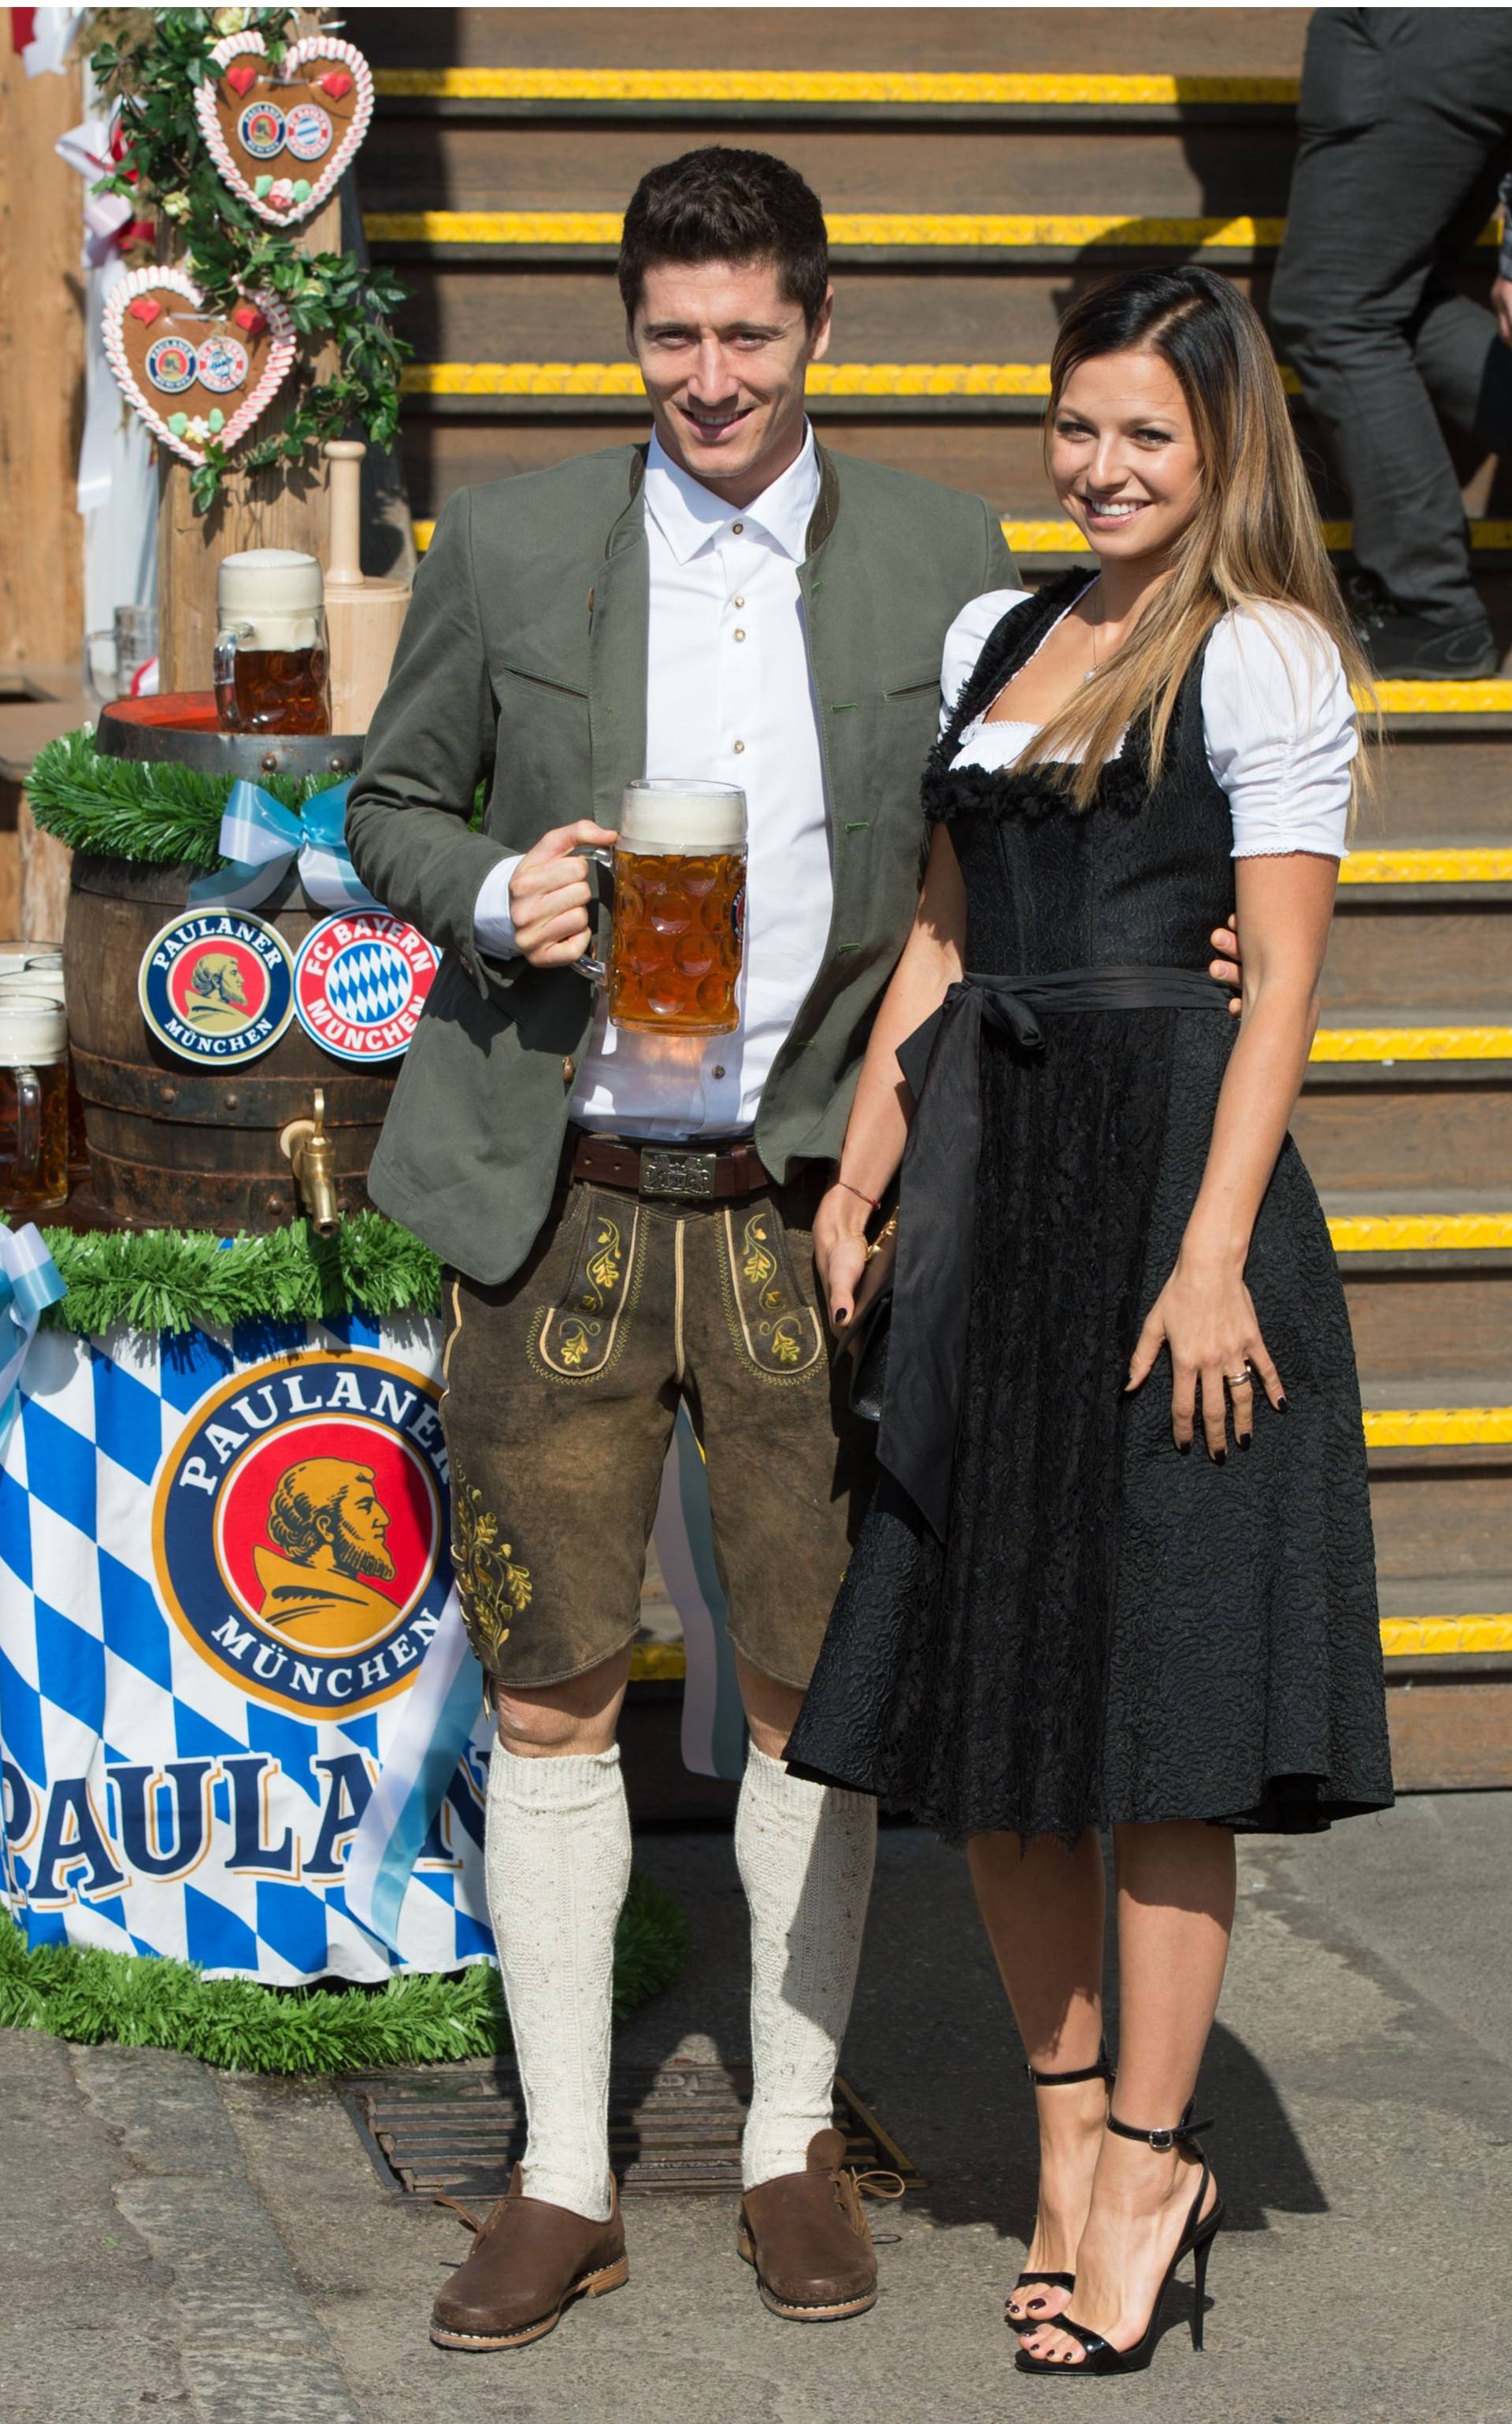 FC Bayern Munich makes Oktoberfest visit